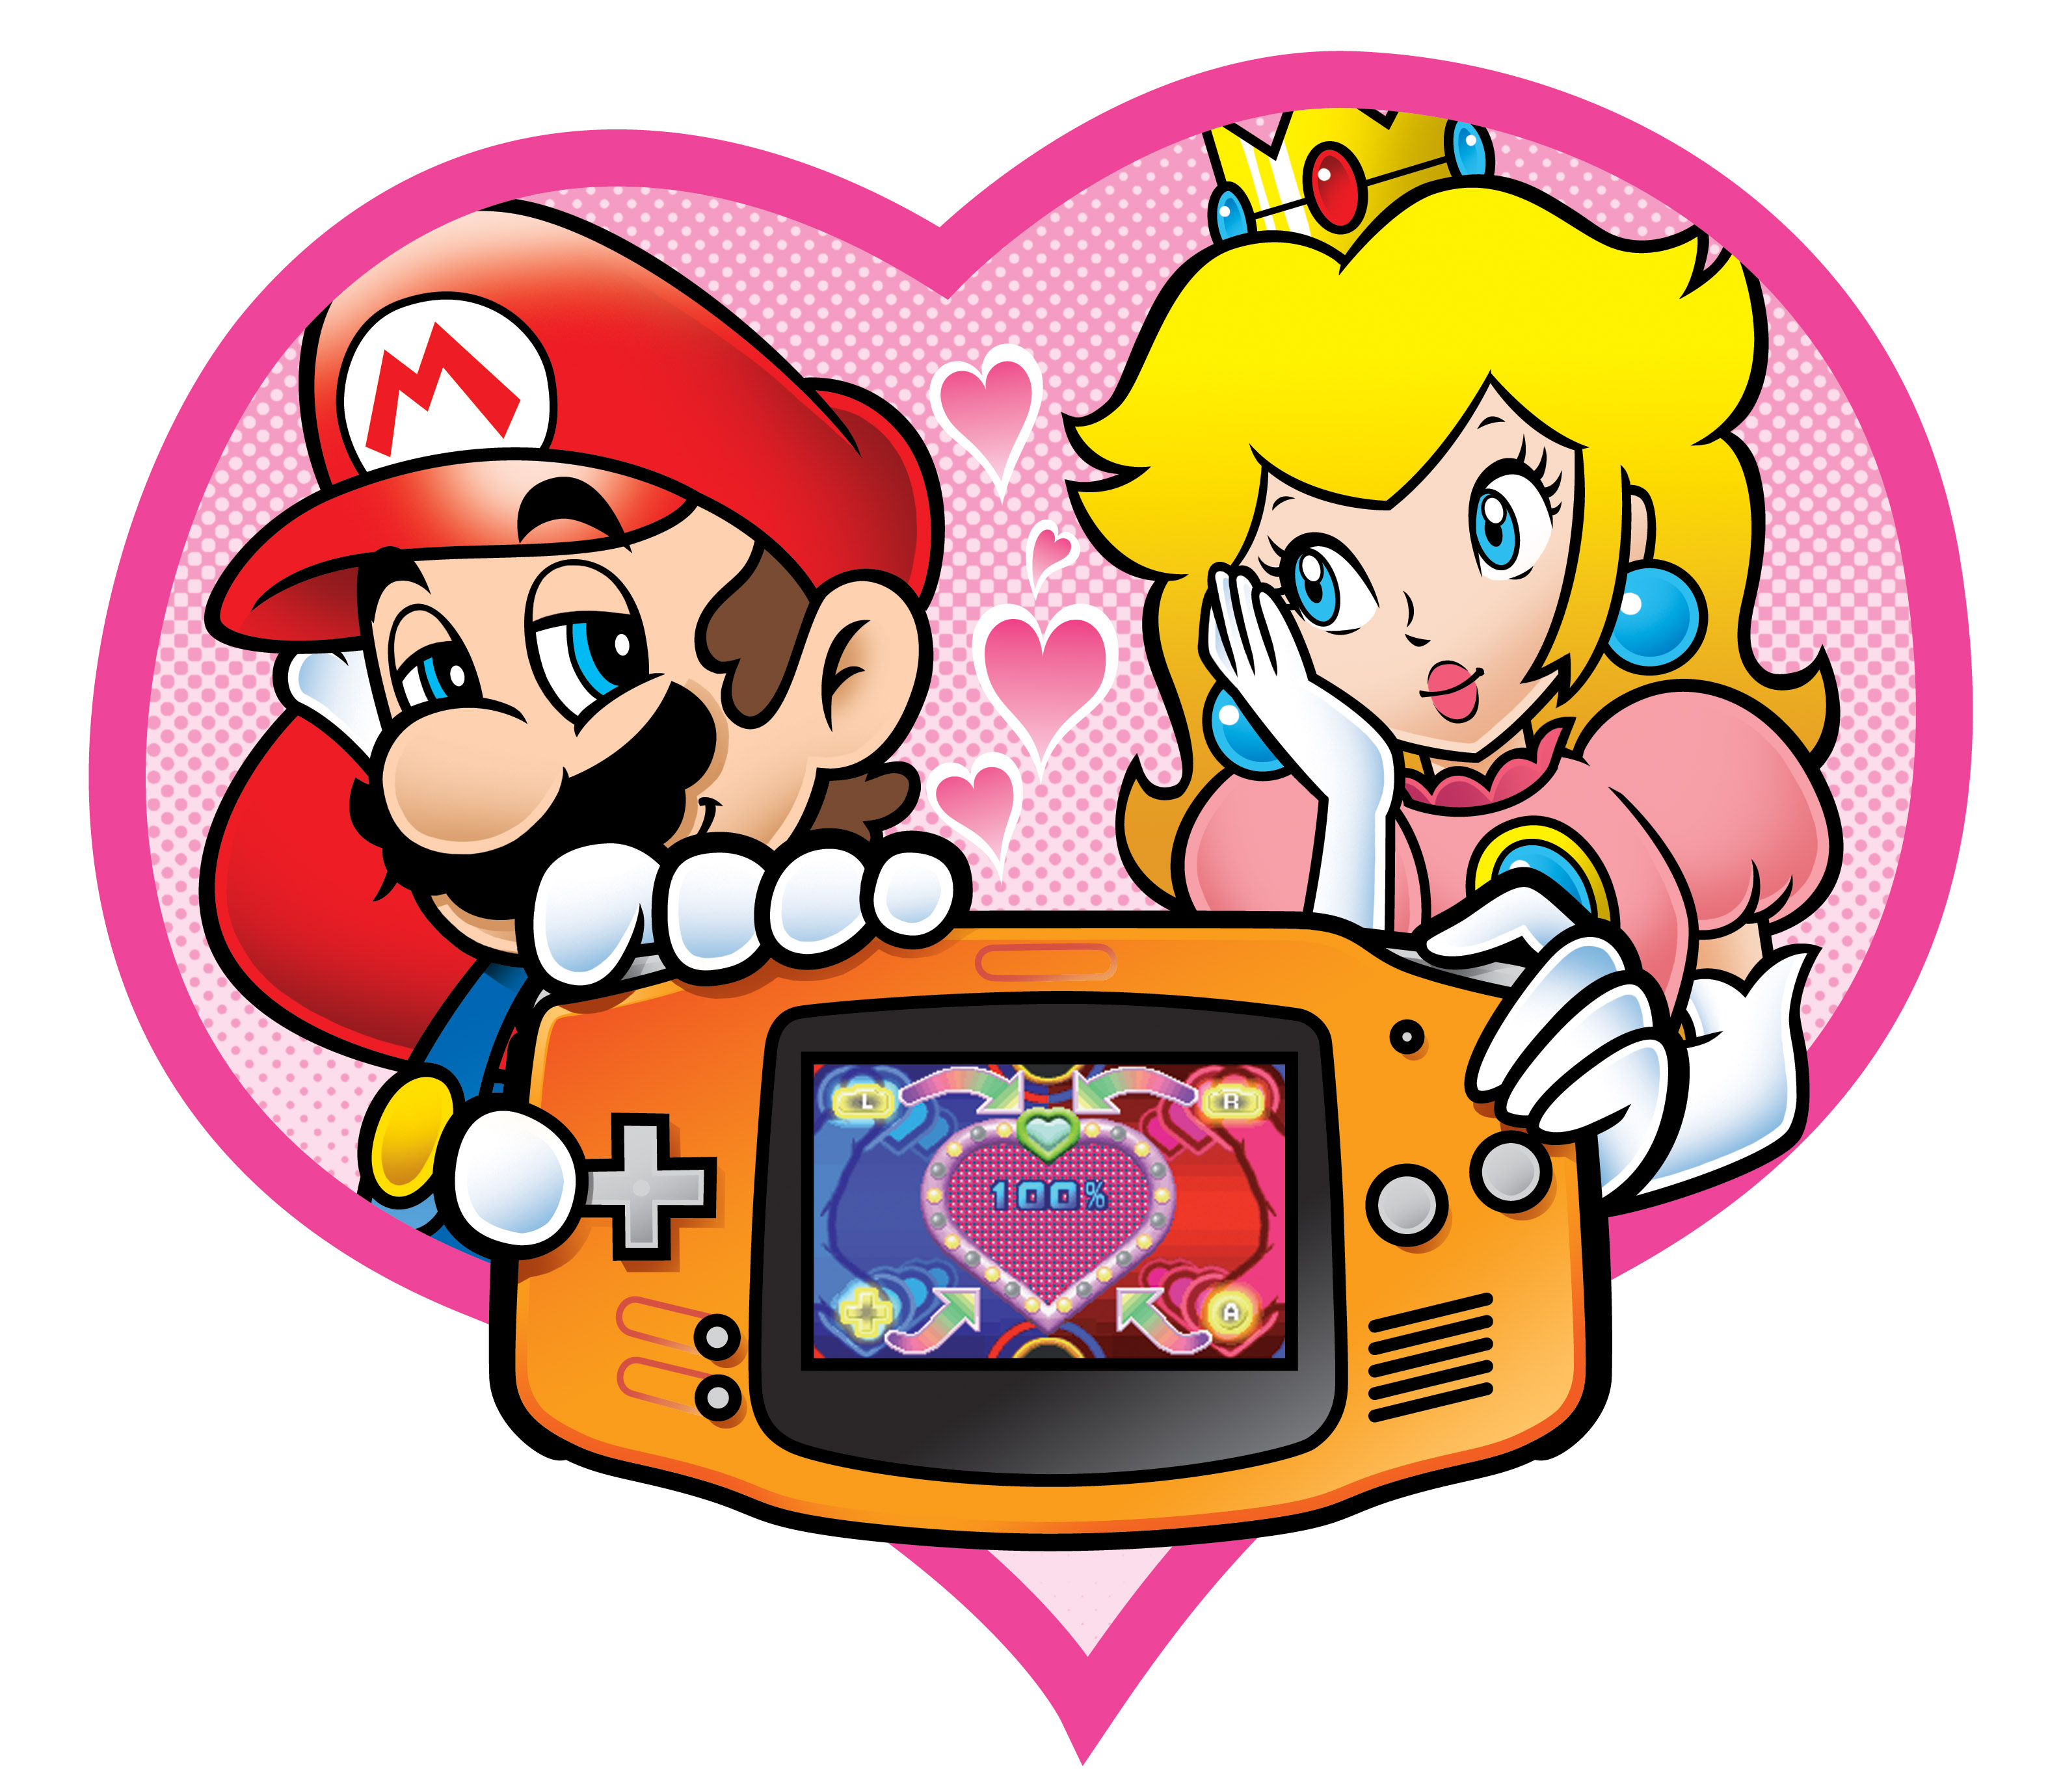 Mario Princess Peach GameBoy Advance Romance Video Games Nintendo Game Boy Nintendo 3169x2756